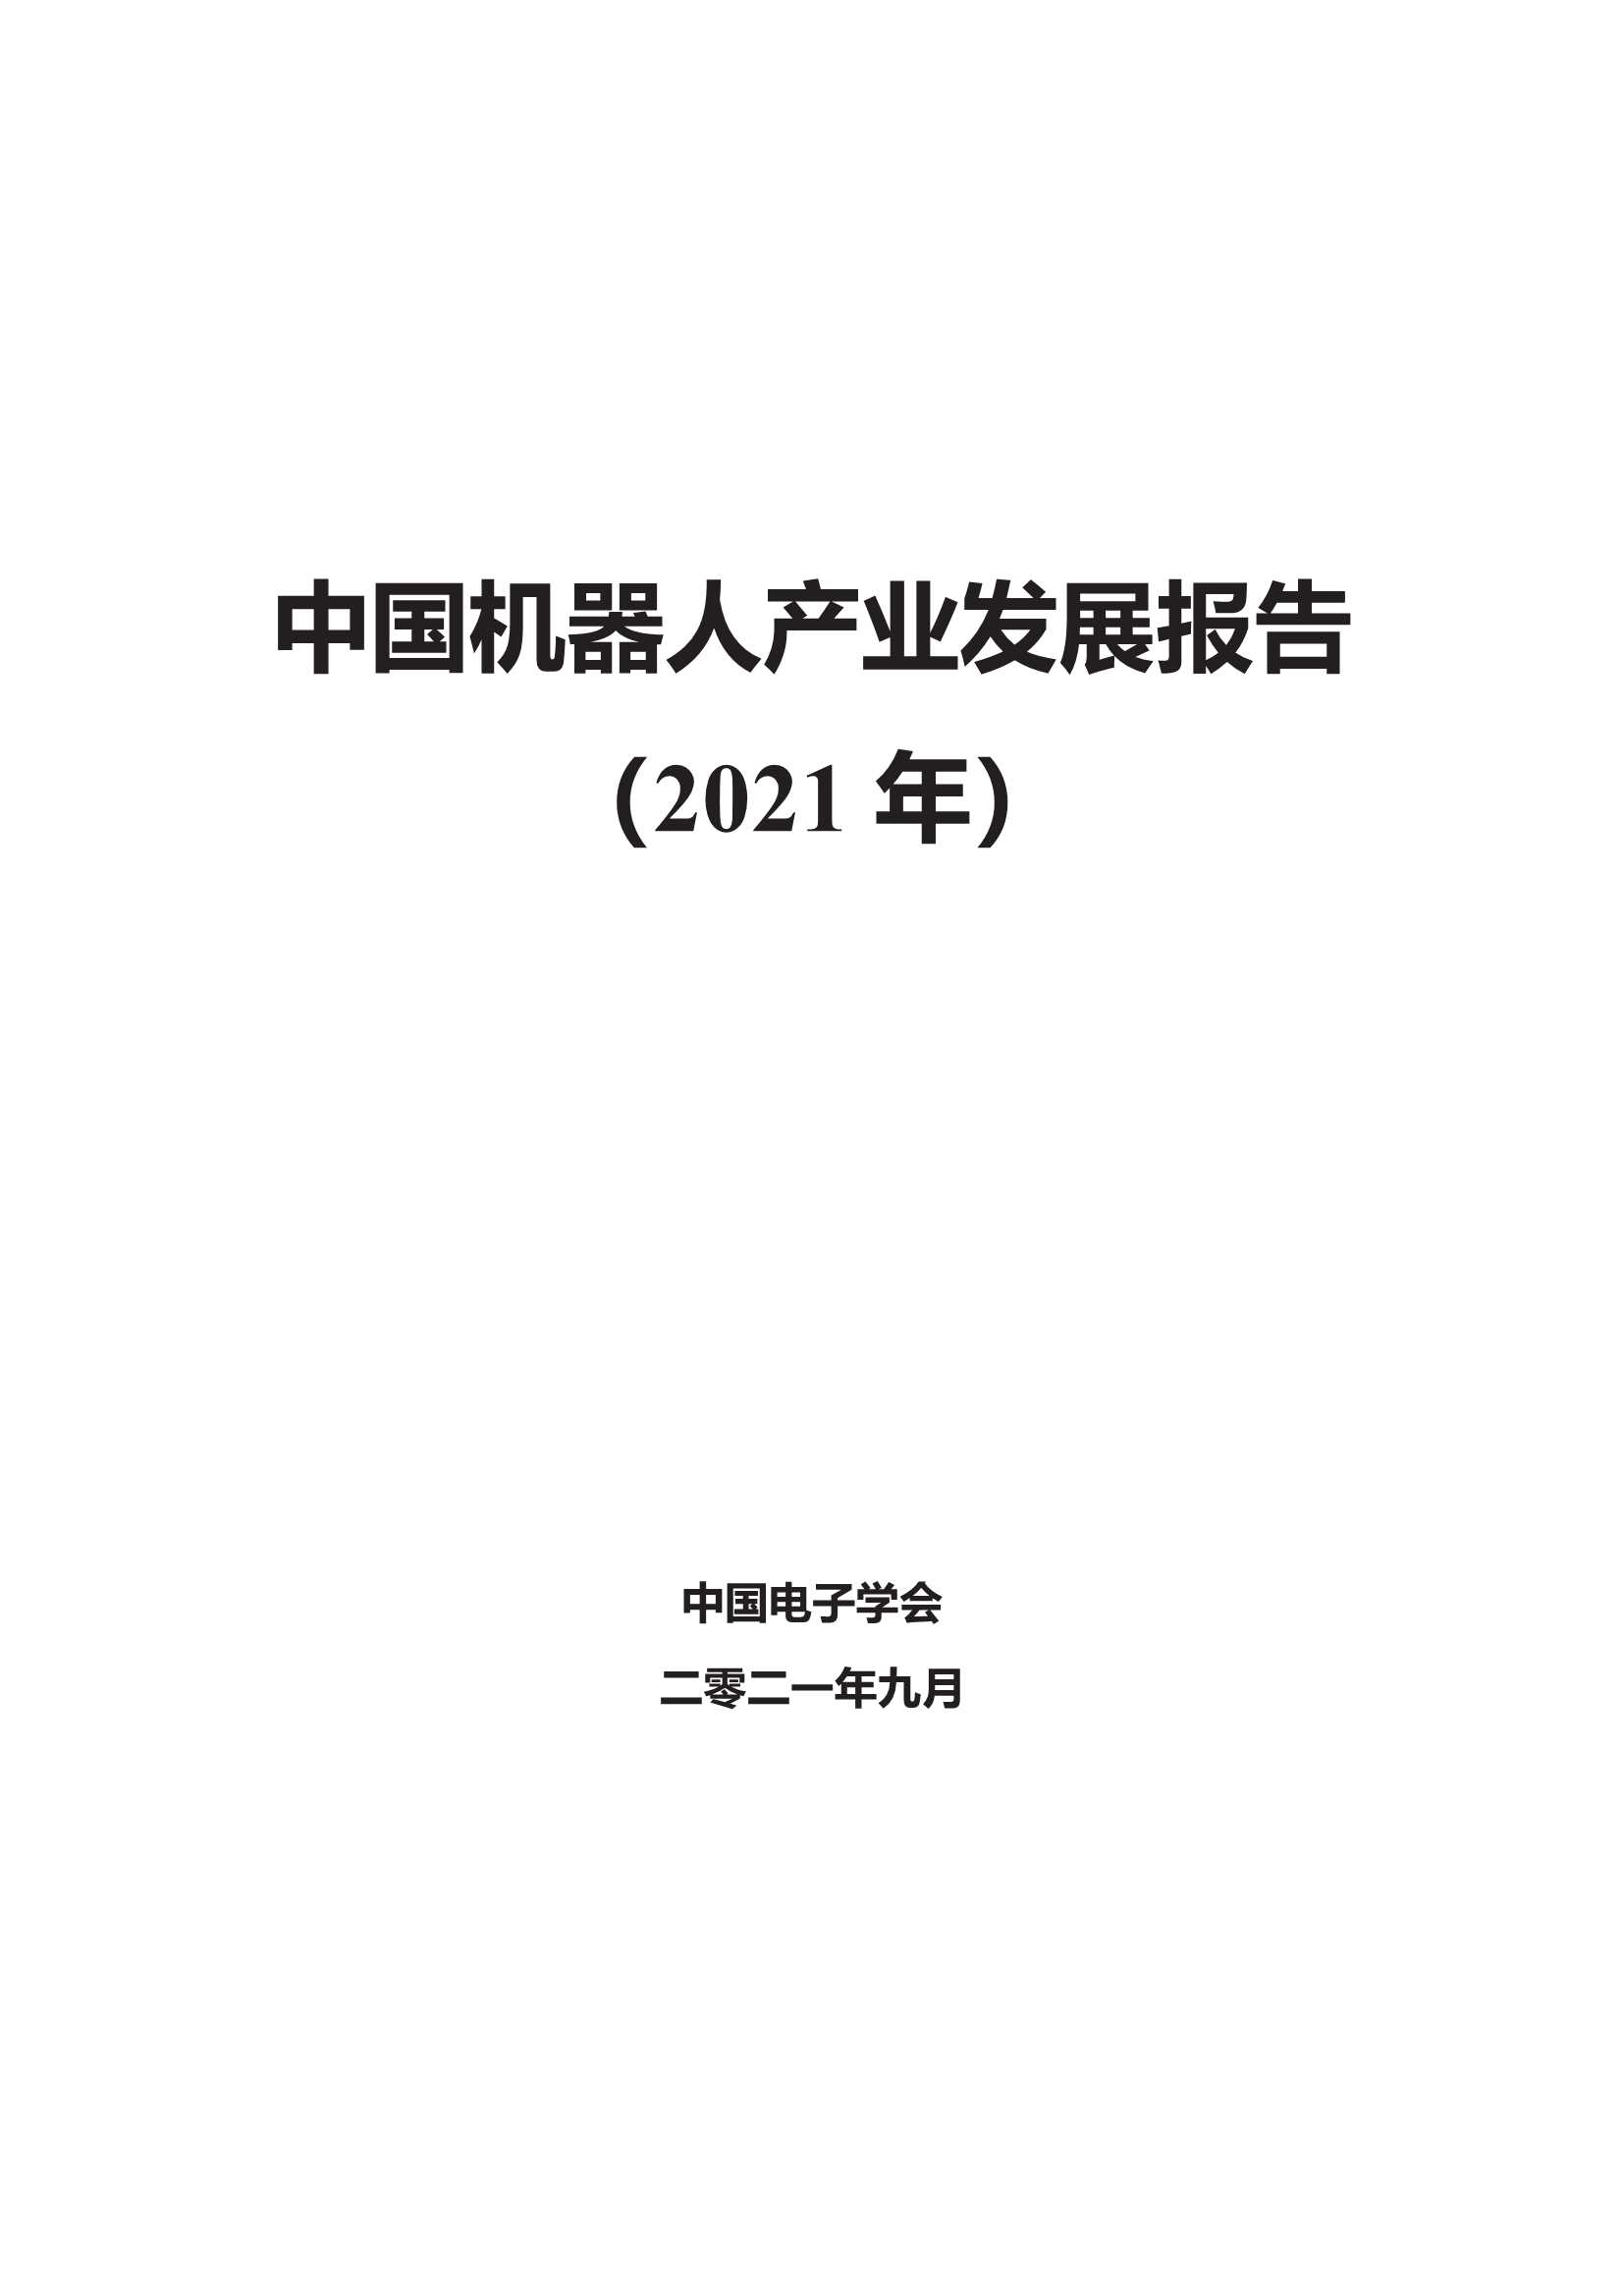 中国电子学会-中国机器人产业发展报告（2021 年）-2021.11-70页